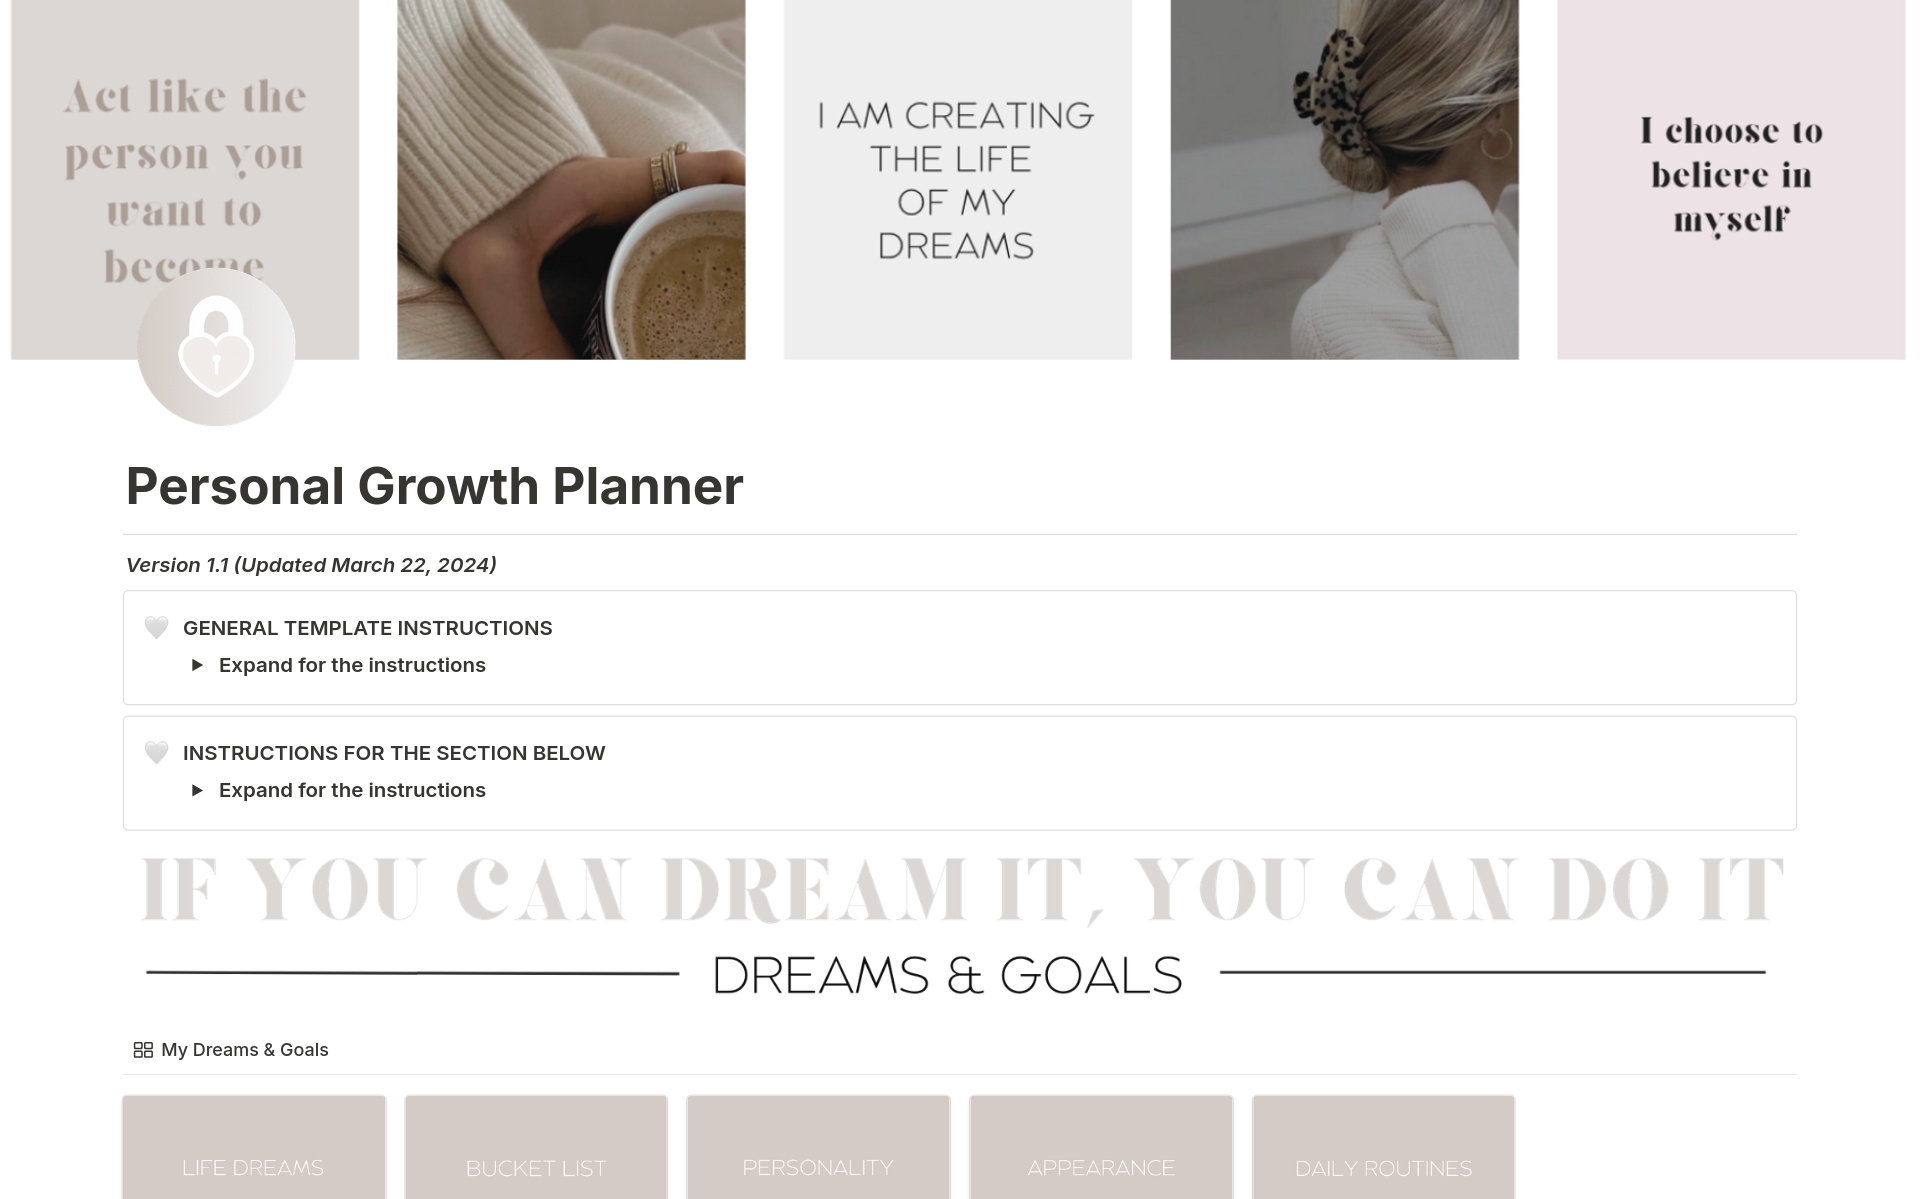 Vista previa de plantilla para Personal Growth Planner